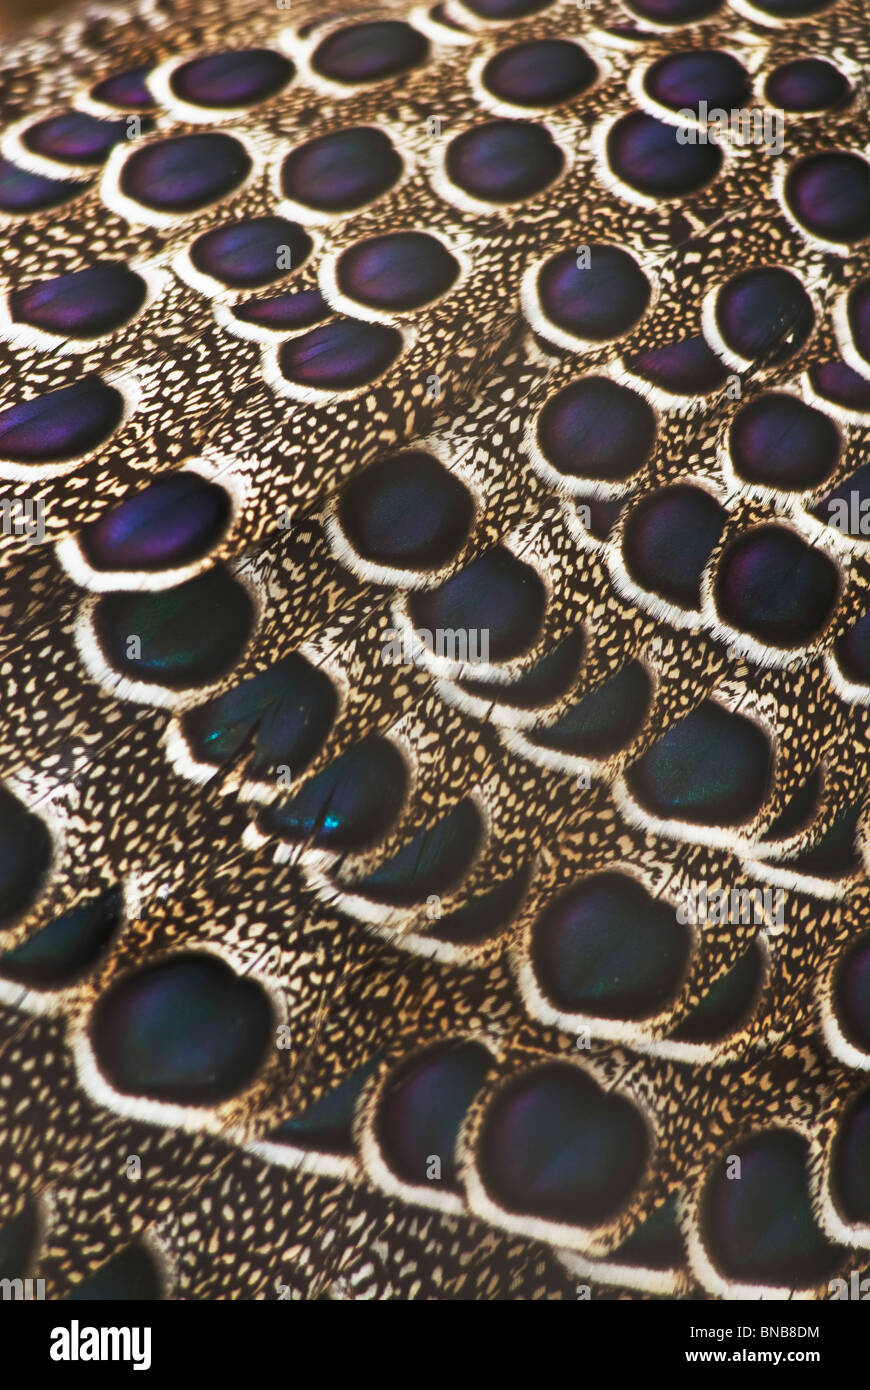 Antenne in der Nähe von pfauenfedern Eine aufwendige Muster formen. Kwazulu-Natal, Südafrika Stockfoto